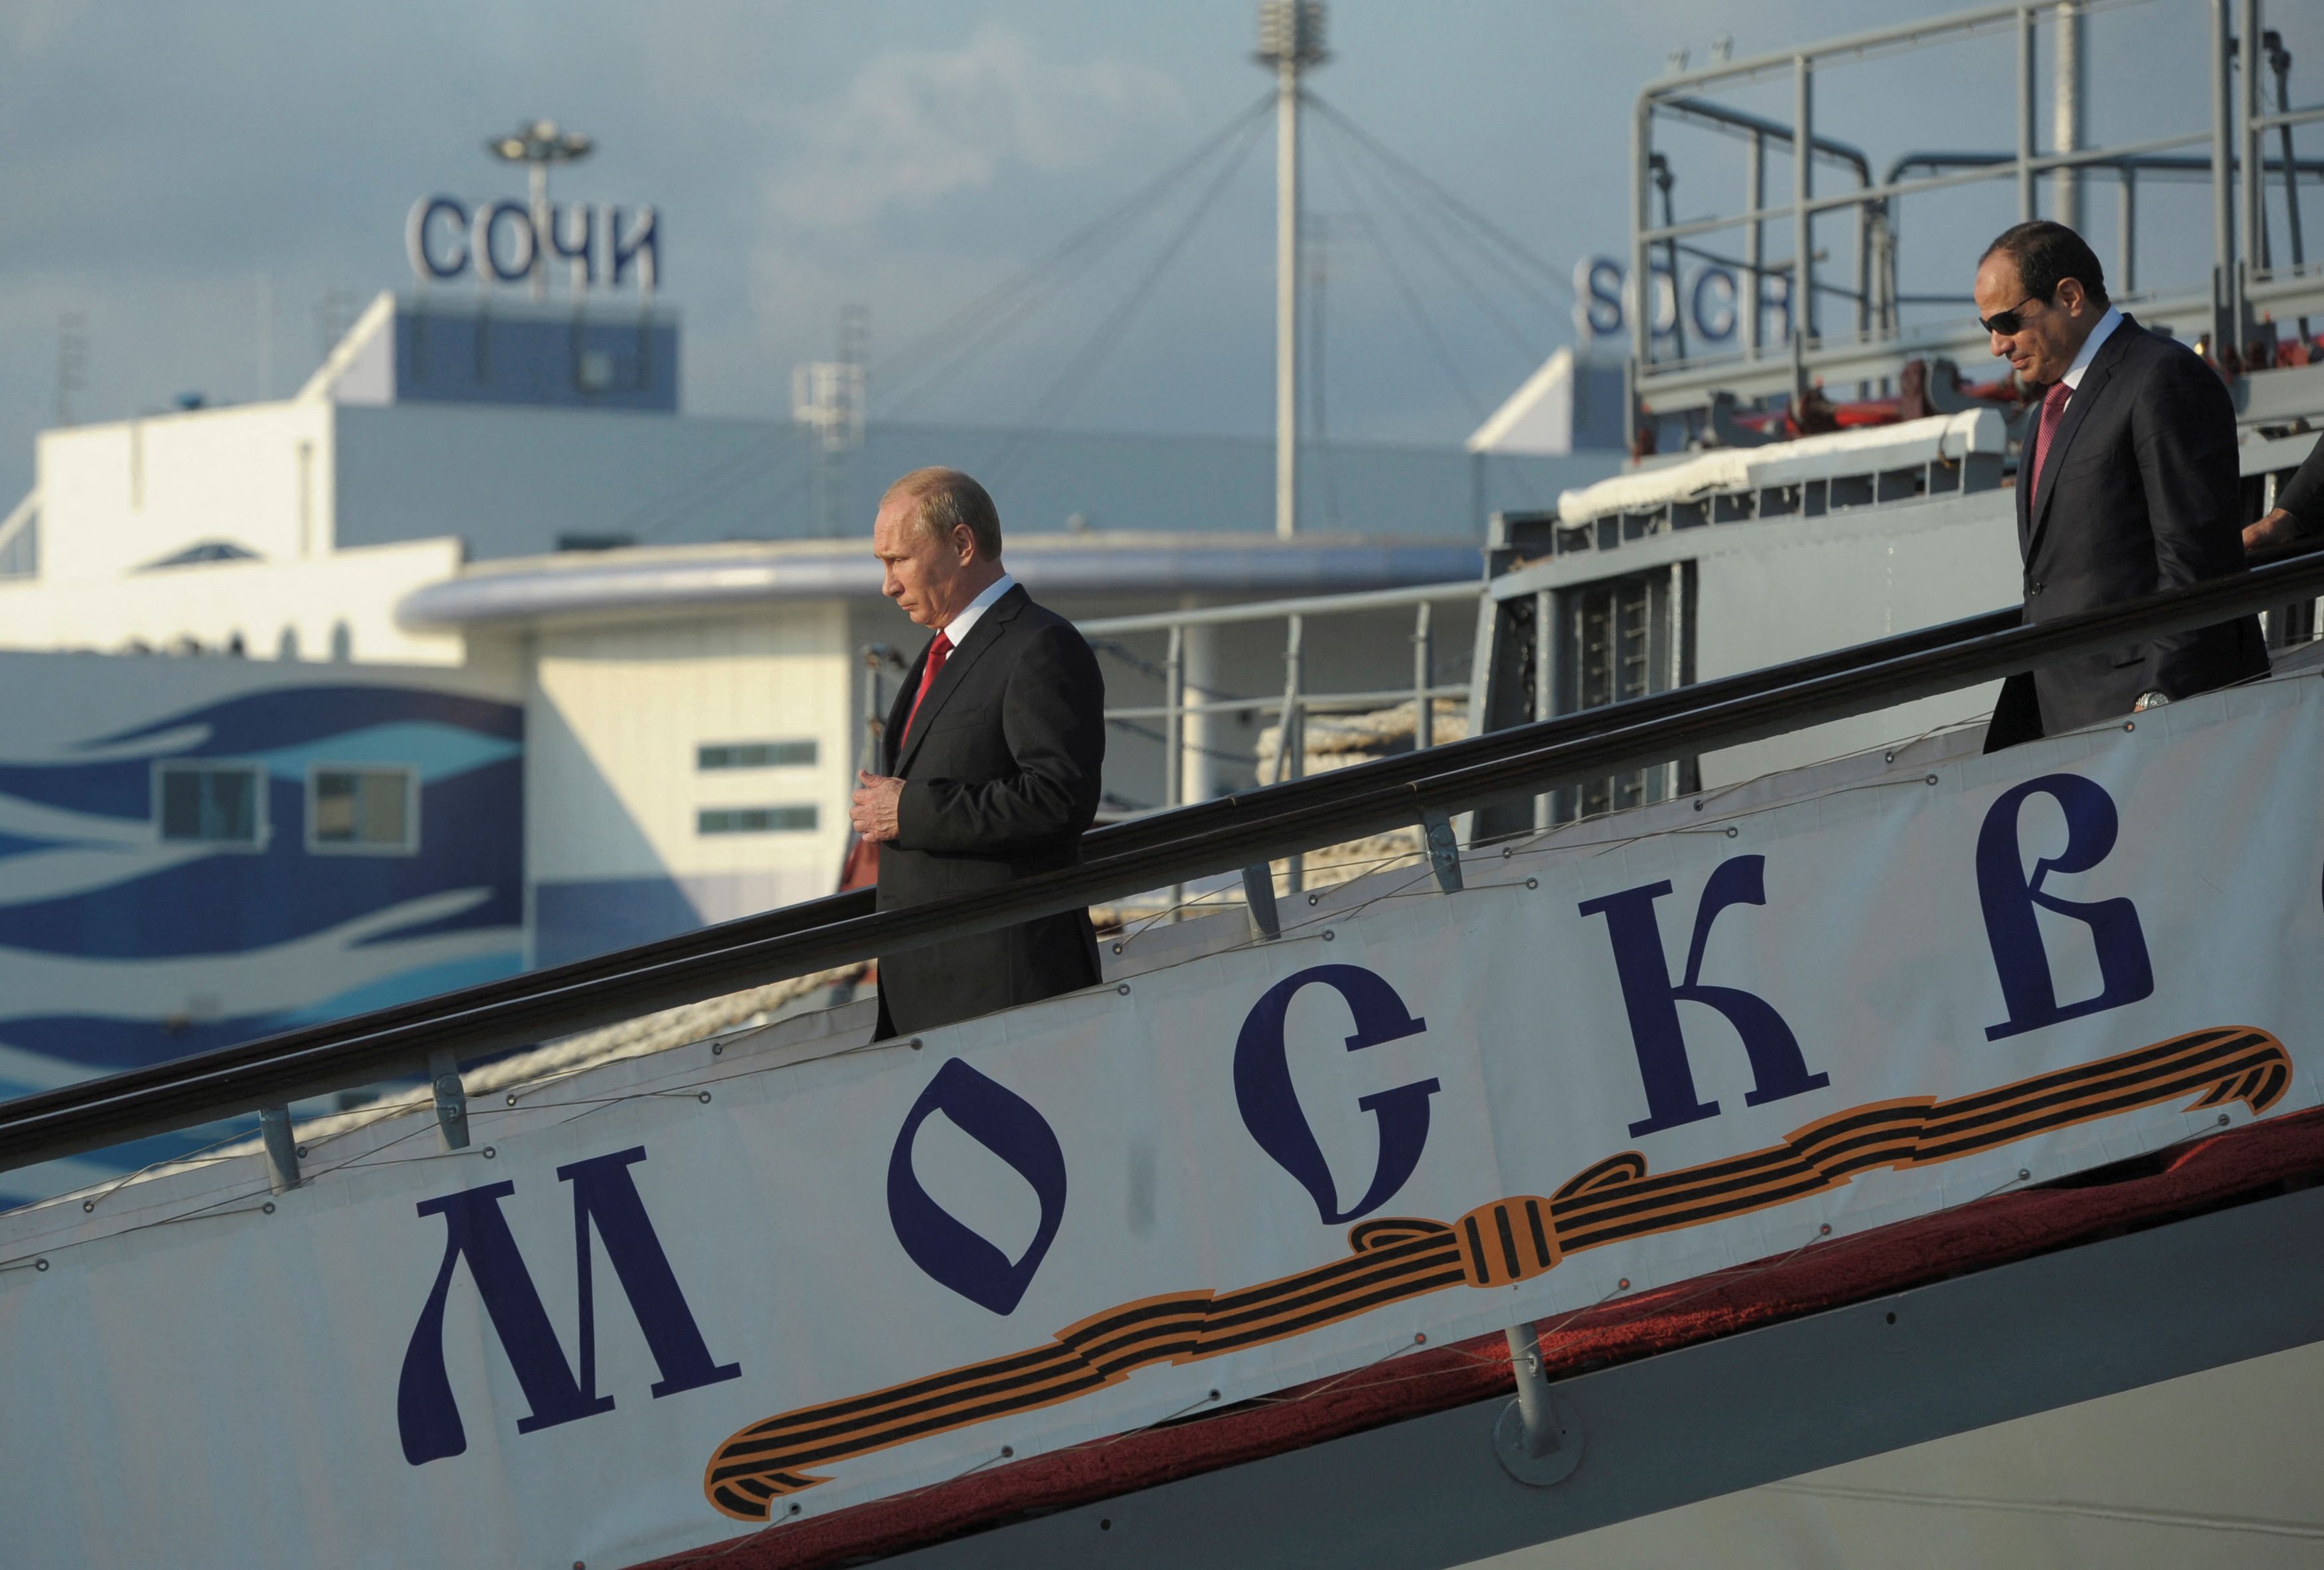 Putin desciende por la rampa del crucero Moskva durante una visita en Sochi en el año 2014 (Sputnik/Alexei Druzhinin/Kremlin via REUTERS/Archivo)